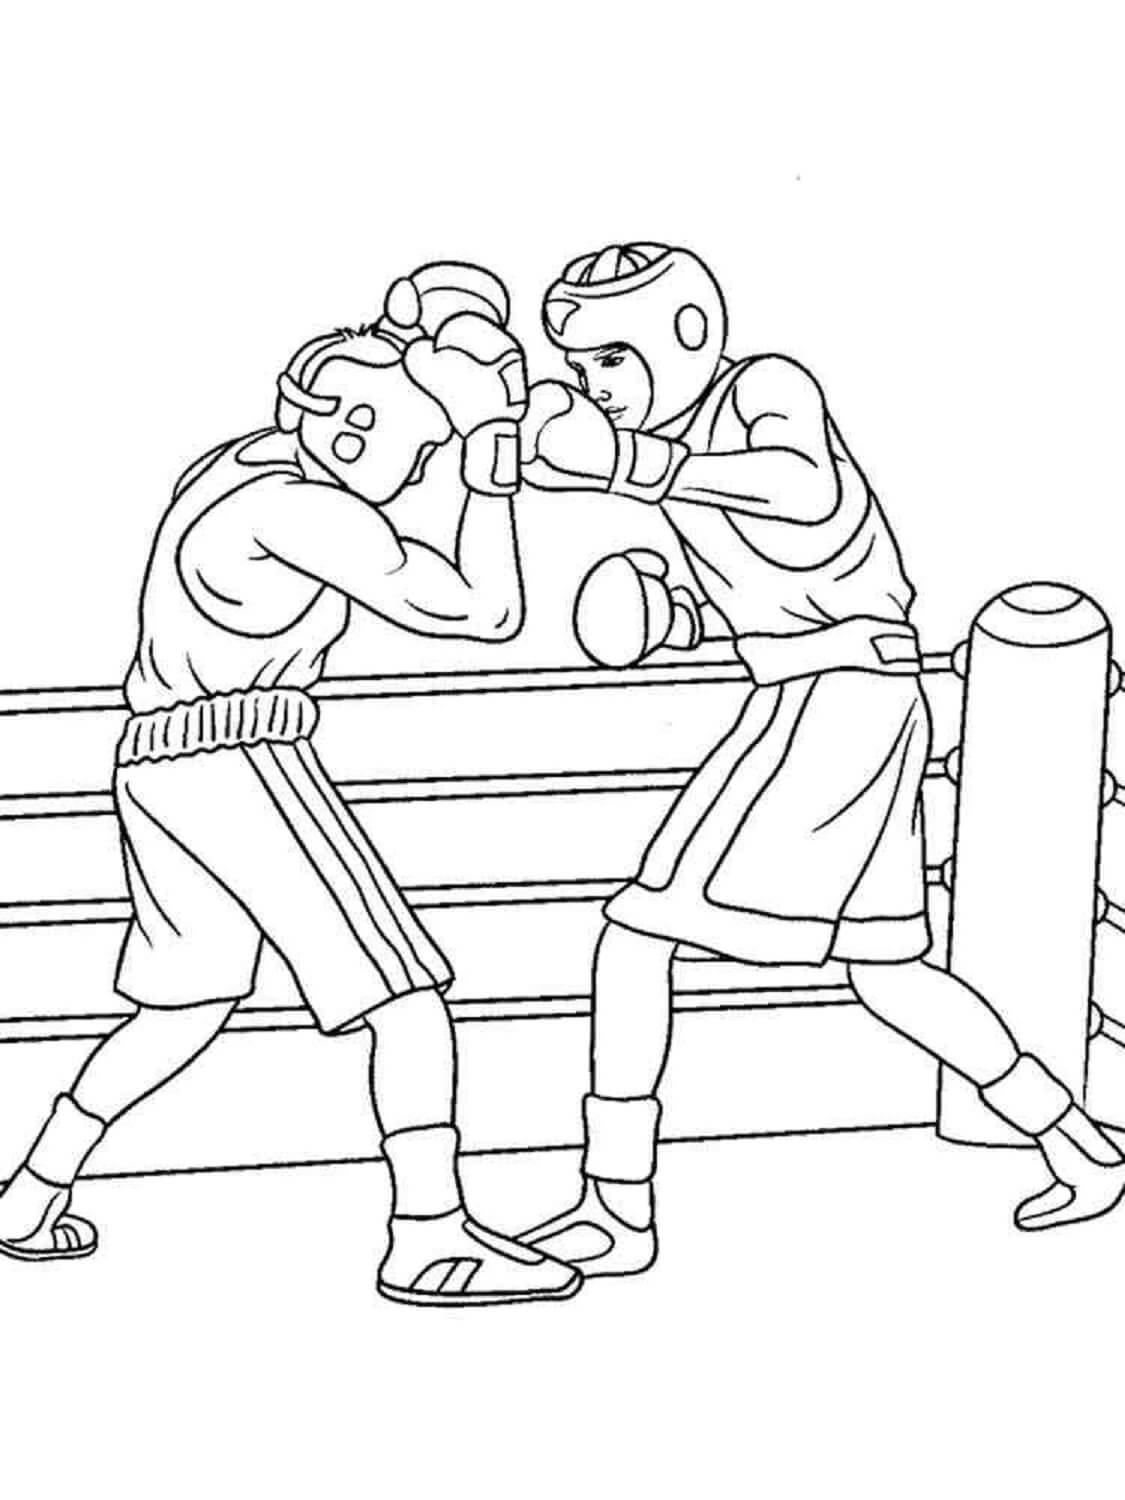 Dibujos de Dos Boxeadores Peleando para colorear